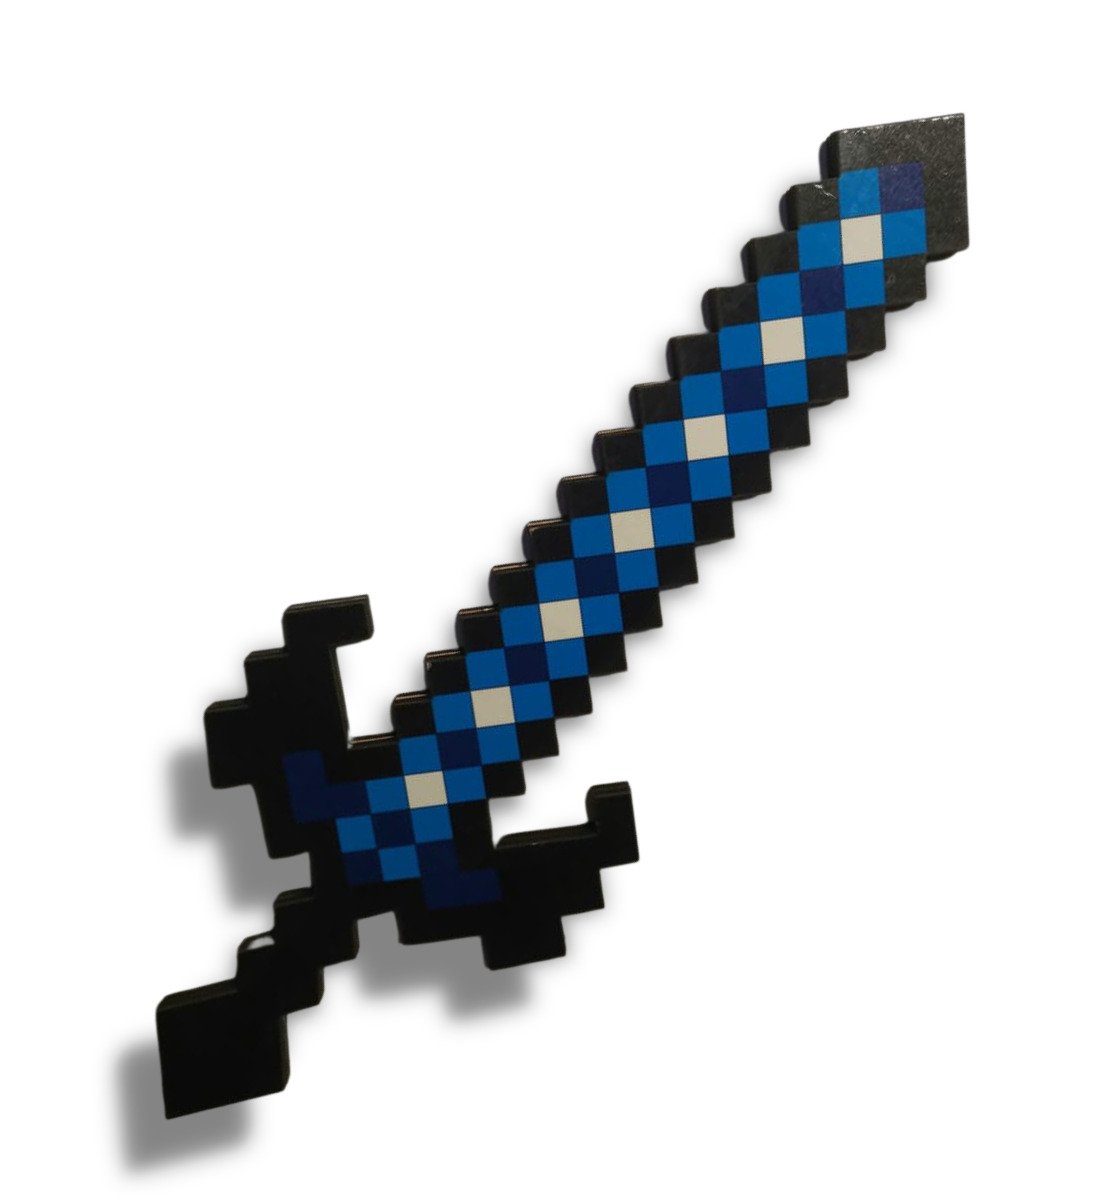 Красивый меч майнкрафт. Алмазный Зачарованный меч из МАЙНКРАФТА. Алмазный меч майнкрафт пиксельный. Игрушка Minecraft алмазный меч hdv53. Игрушечный алмазный меч из МАЙНКРАФТА.